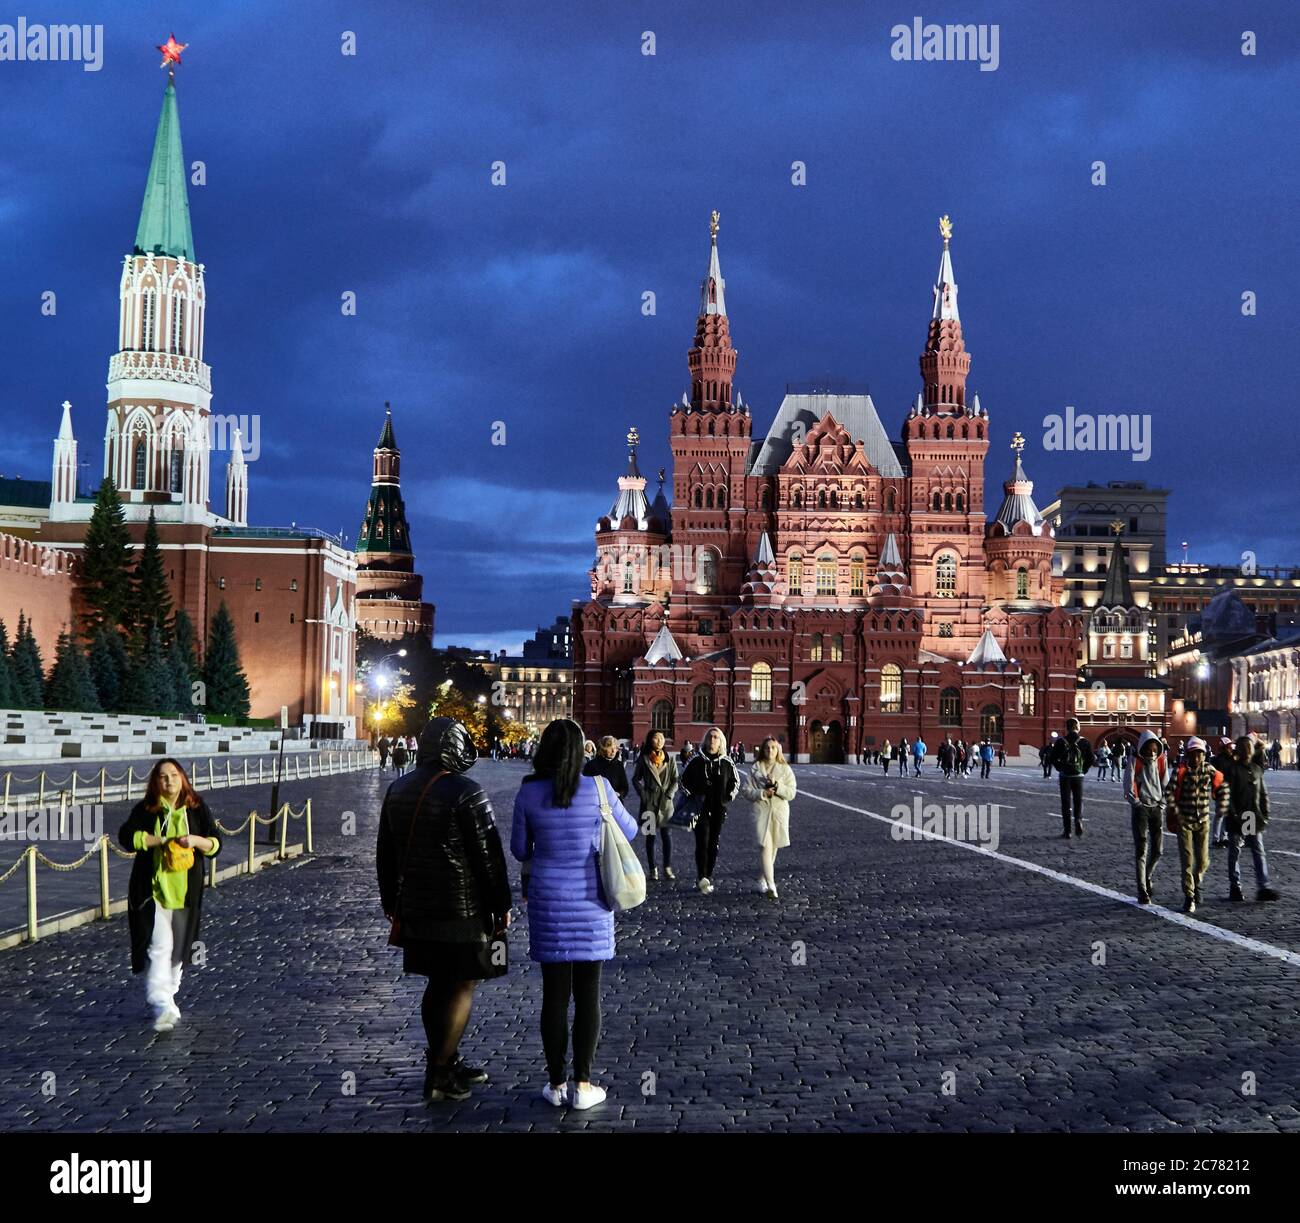 Moskau, Russland. Das Staatliche Historische Museum und der große Kremlpalast auf dem Roten Platz ist russische Geschichte. In der Abenddämmerung gehen viele Menschen gerne auf dem Roten Platz spazieren. Stockfoto